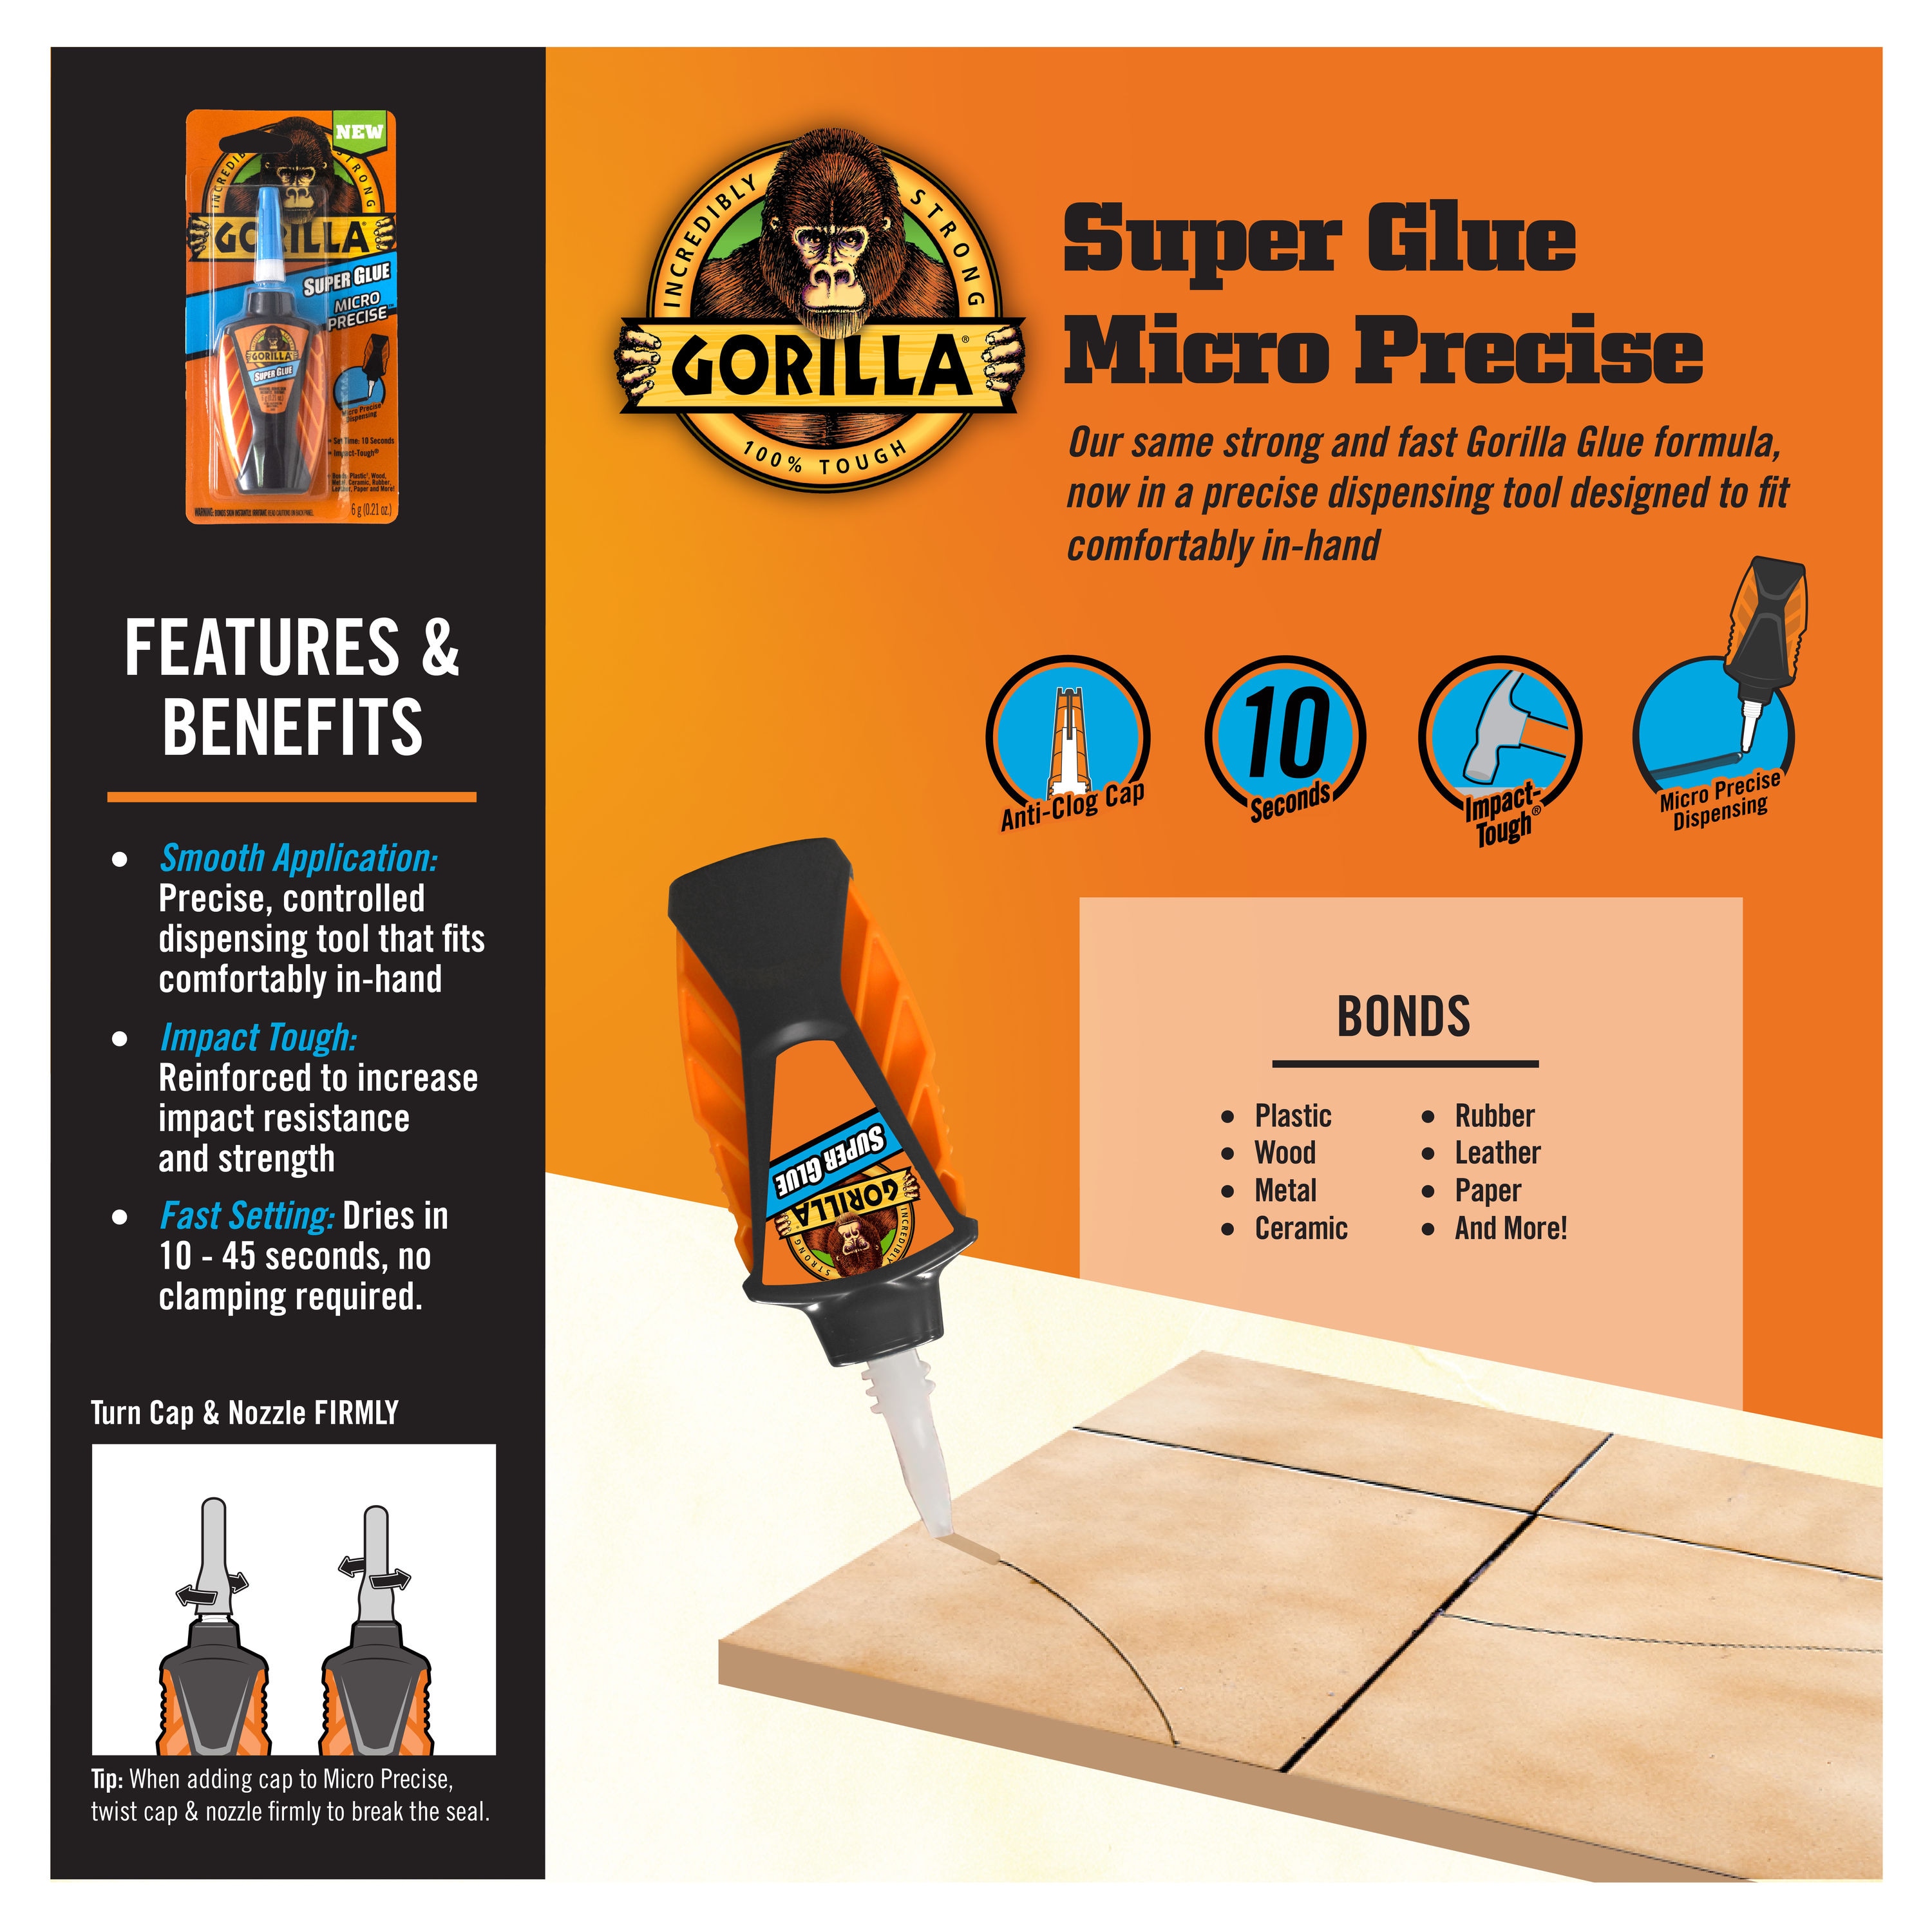 Reviews for Loctite Super Glue 0.21 oz Plastic 2 Part Bonding All